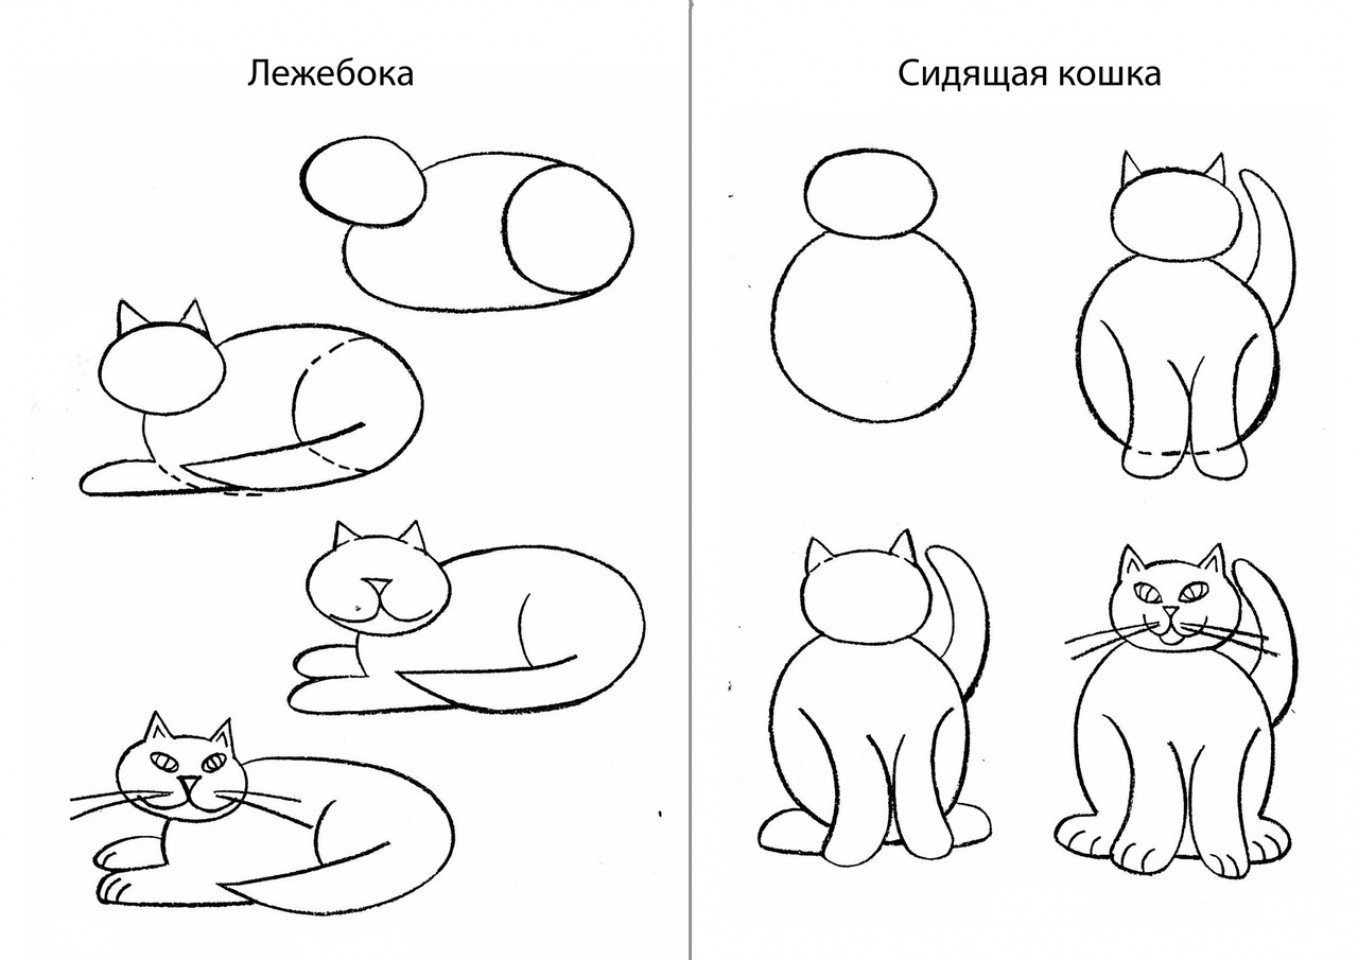 Нарисовать кошку поэтапно для детей. Схема рисования кошки. Поэтапное рисование кошки для дошкольников. Поэтапный рисунок кошки. Схема рисования кошки для детей.